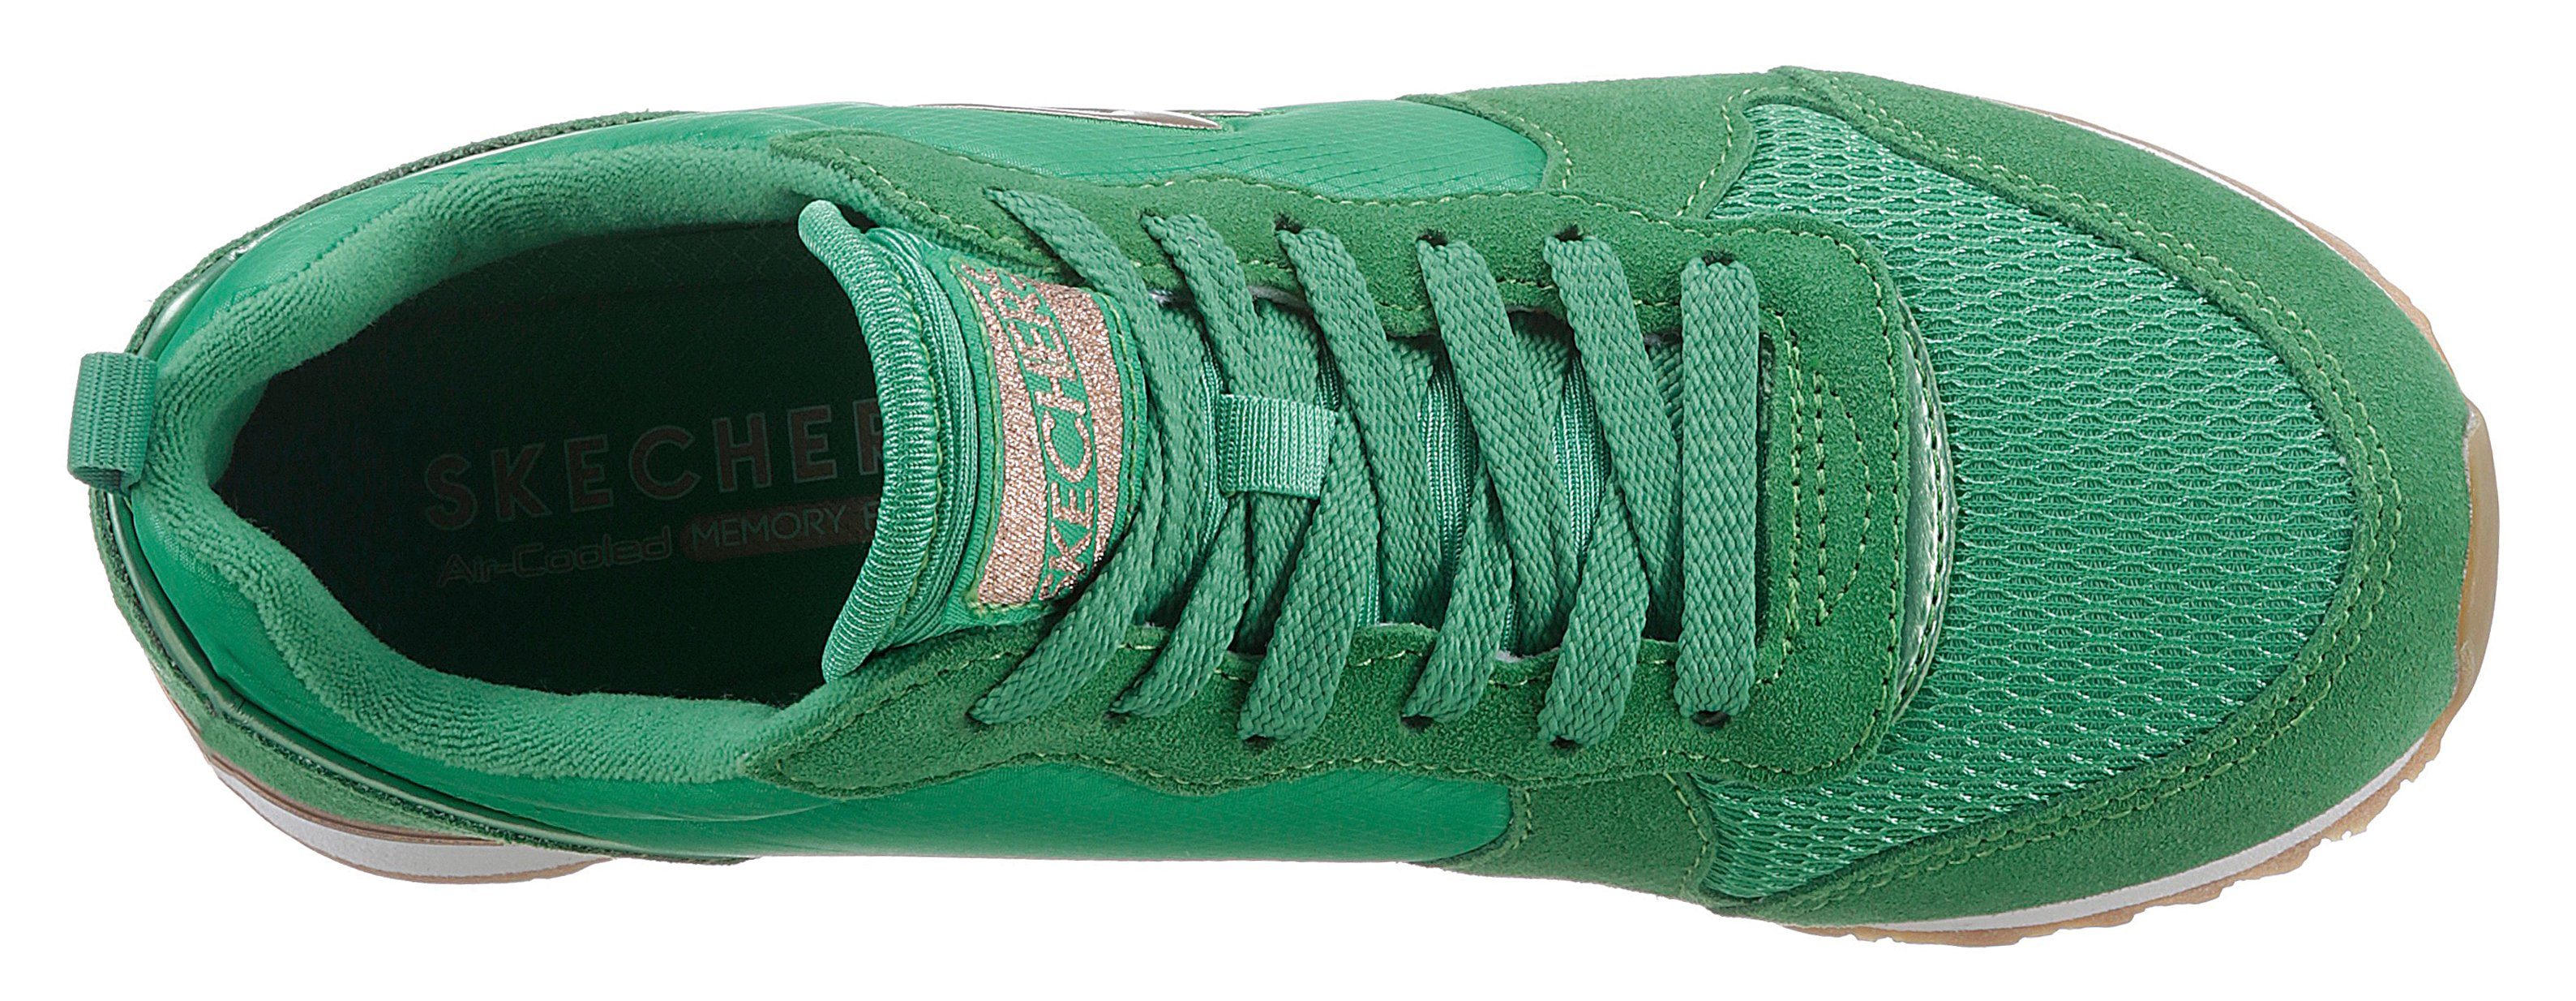 - Memory GURL grün OG Ausstattung komfortabler 85 Skechers Sneaker Foam Air-Cooled mit GOLDN